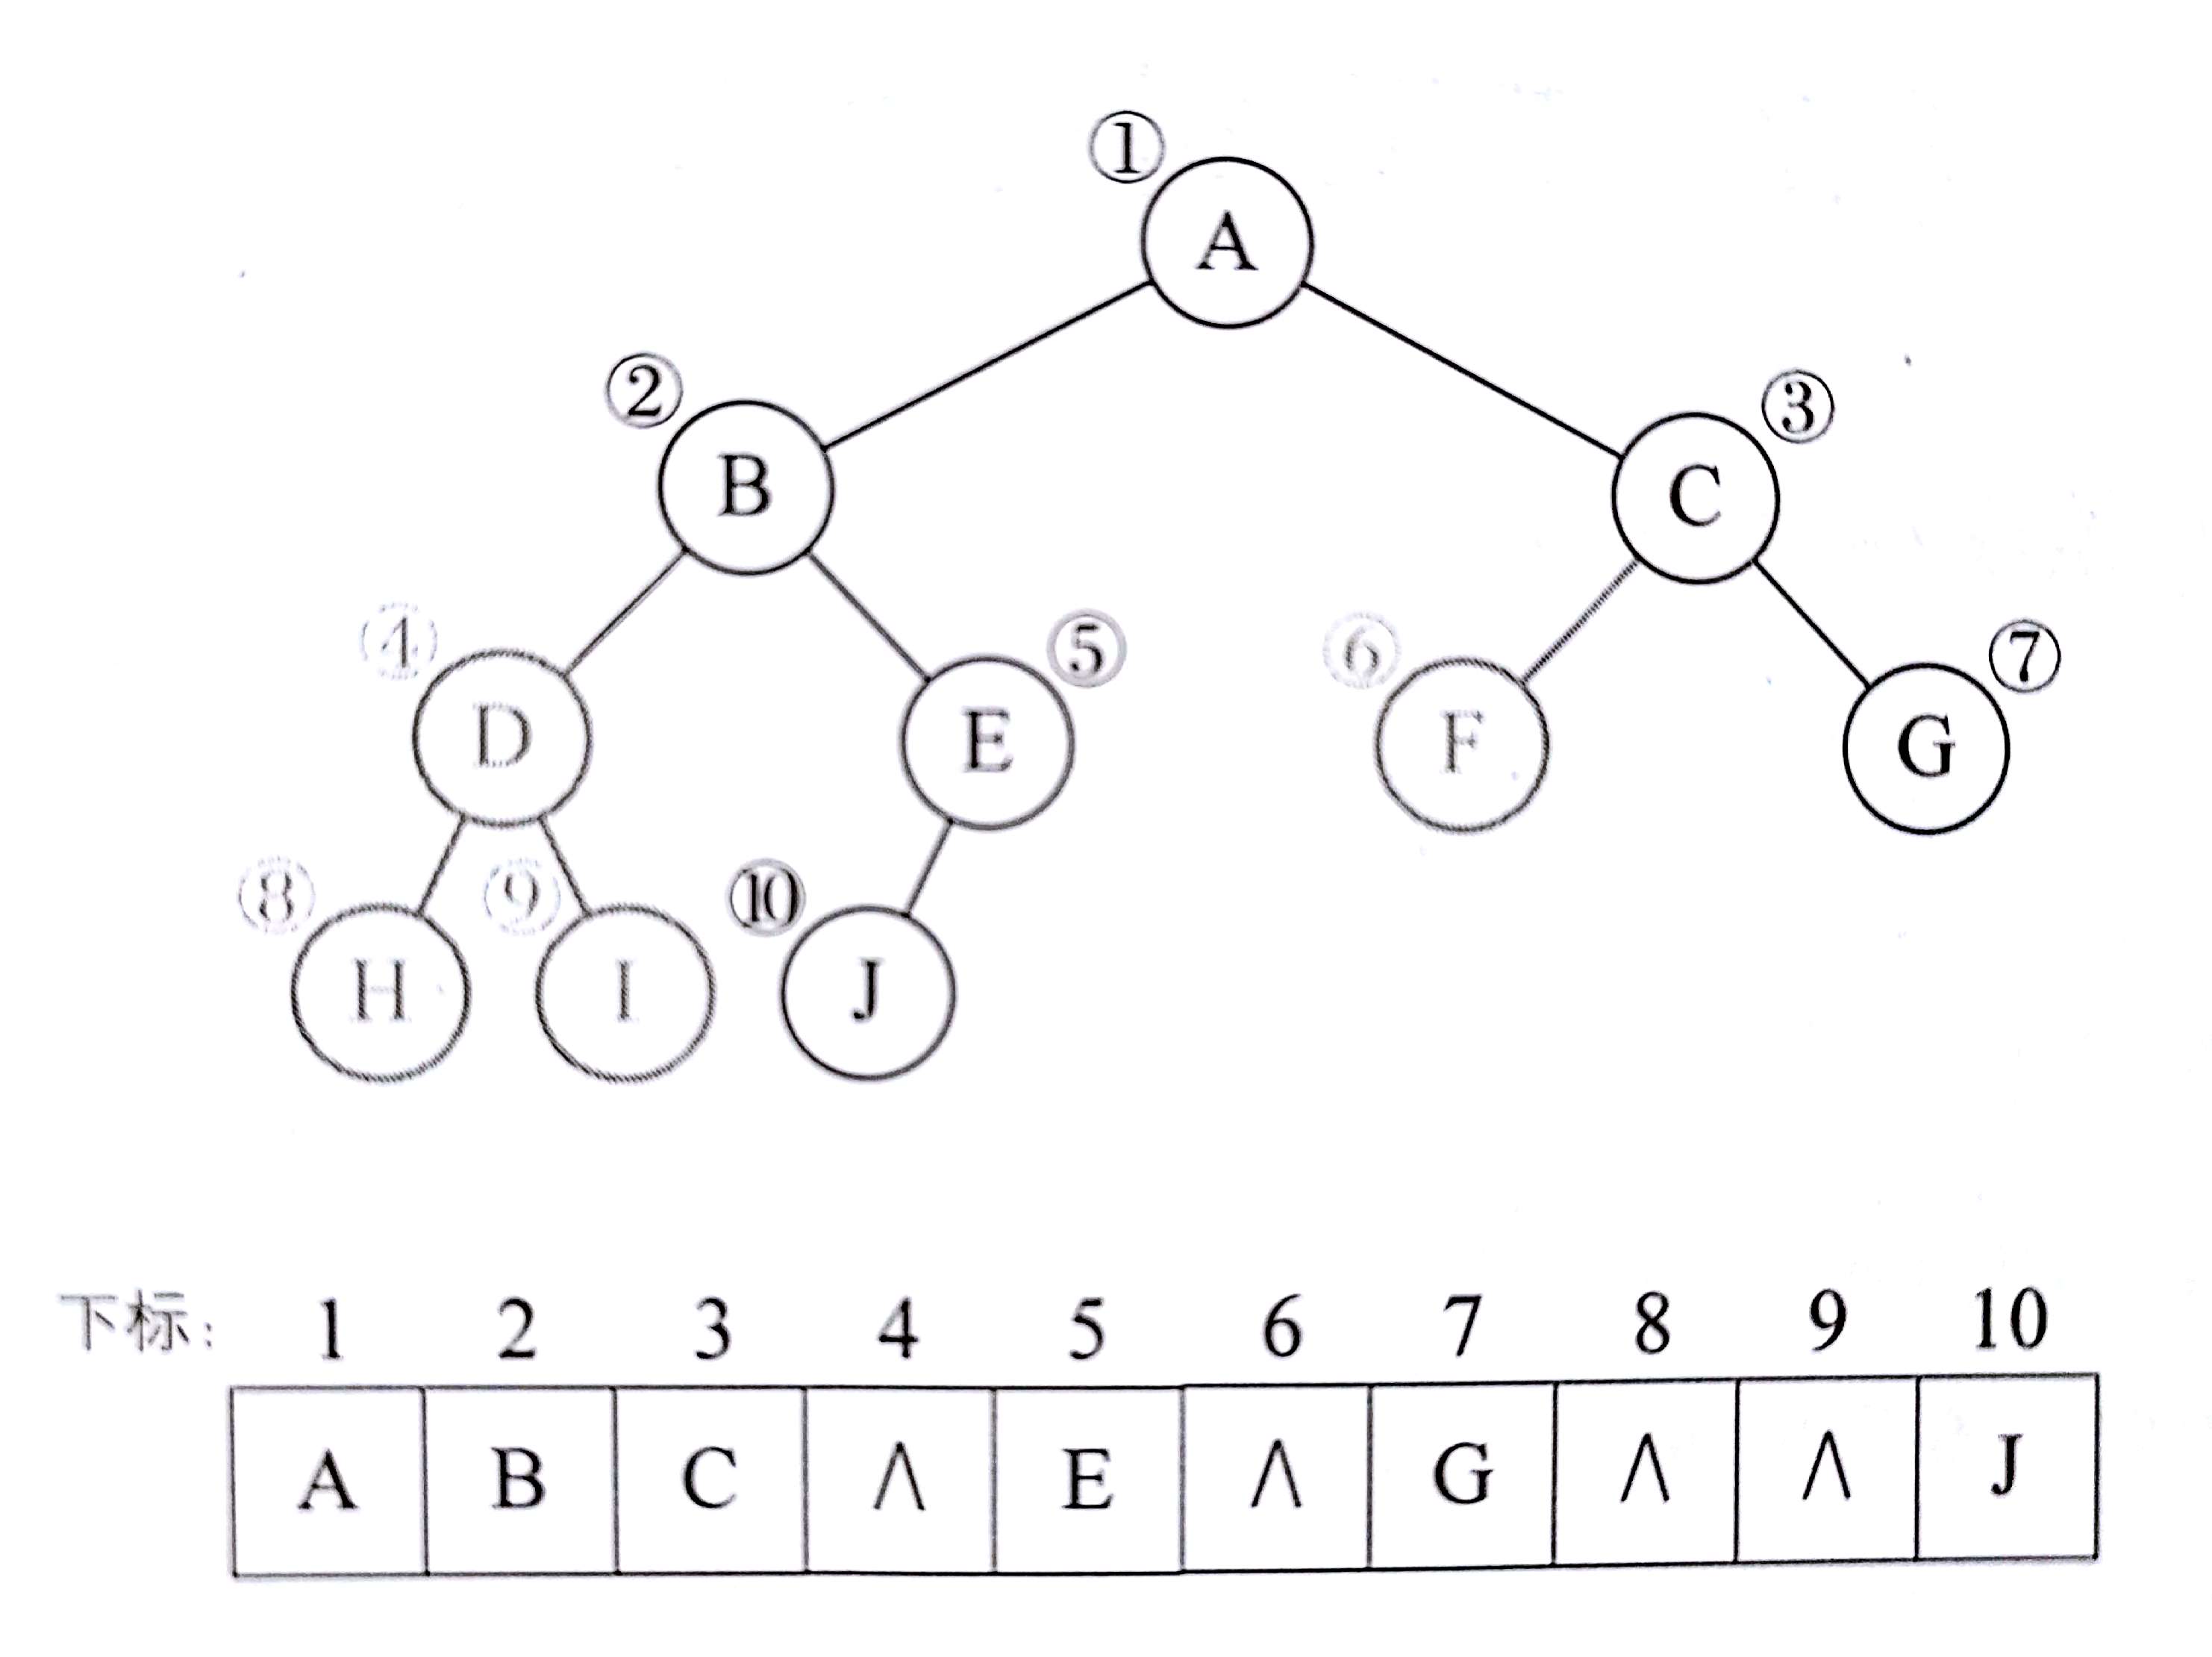 二叉树顺序存储结构